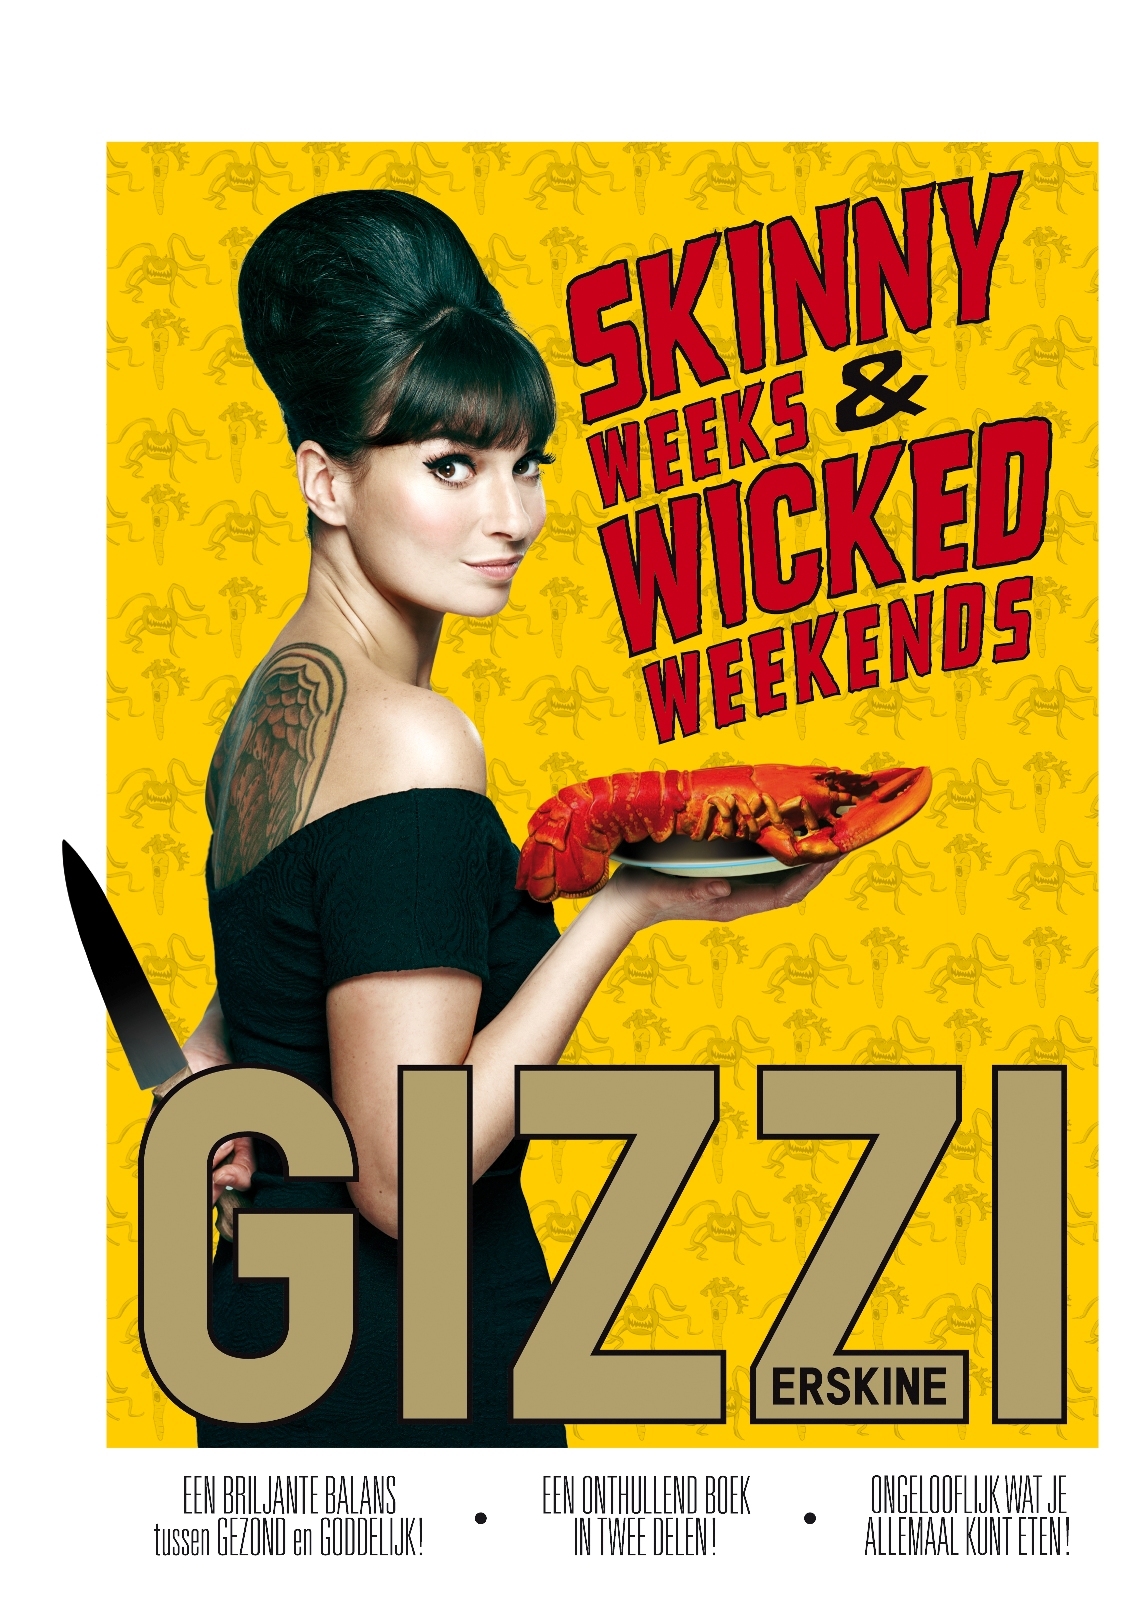 Skinny weeks & Wicked weekends